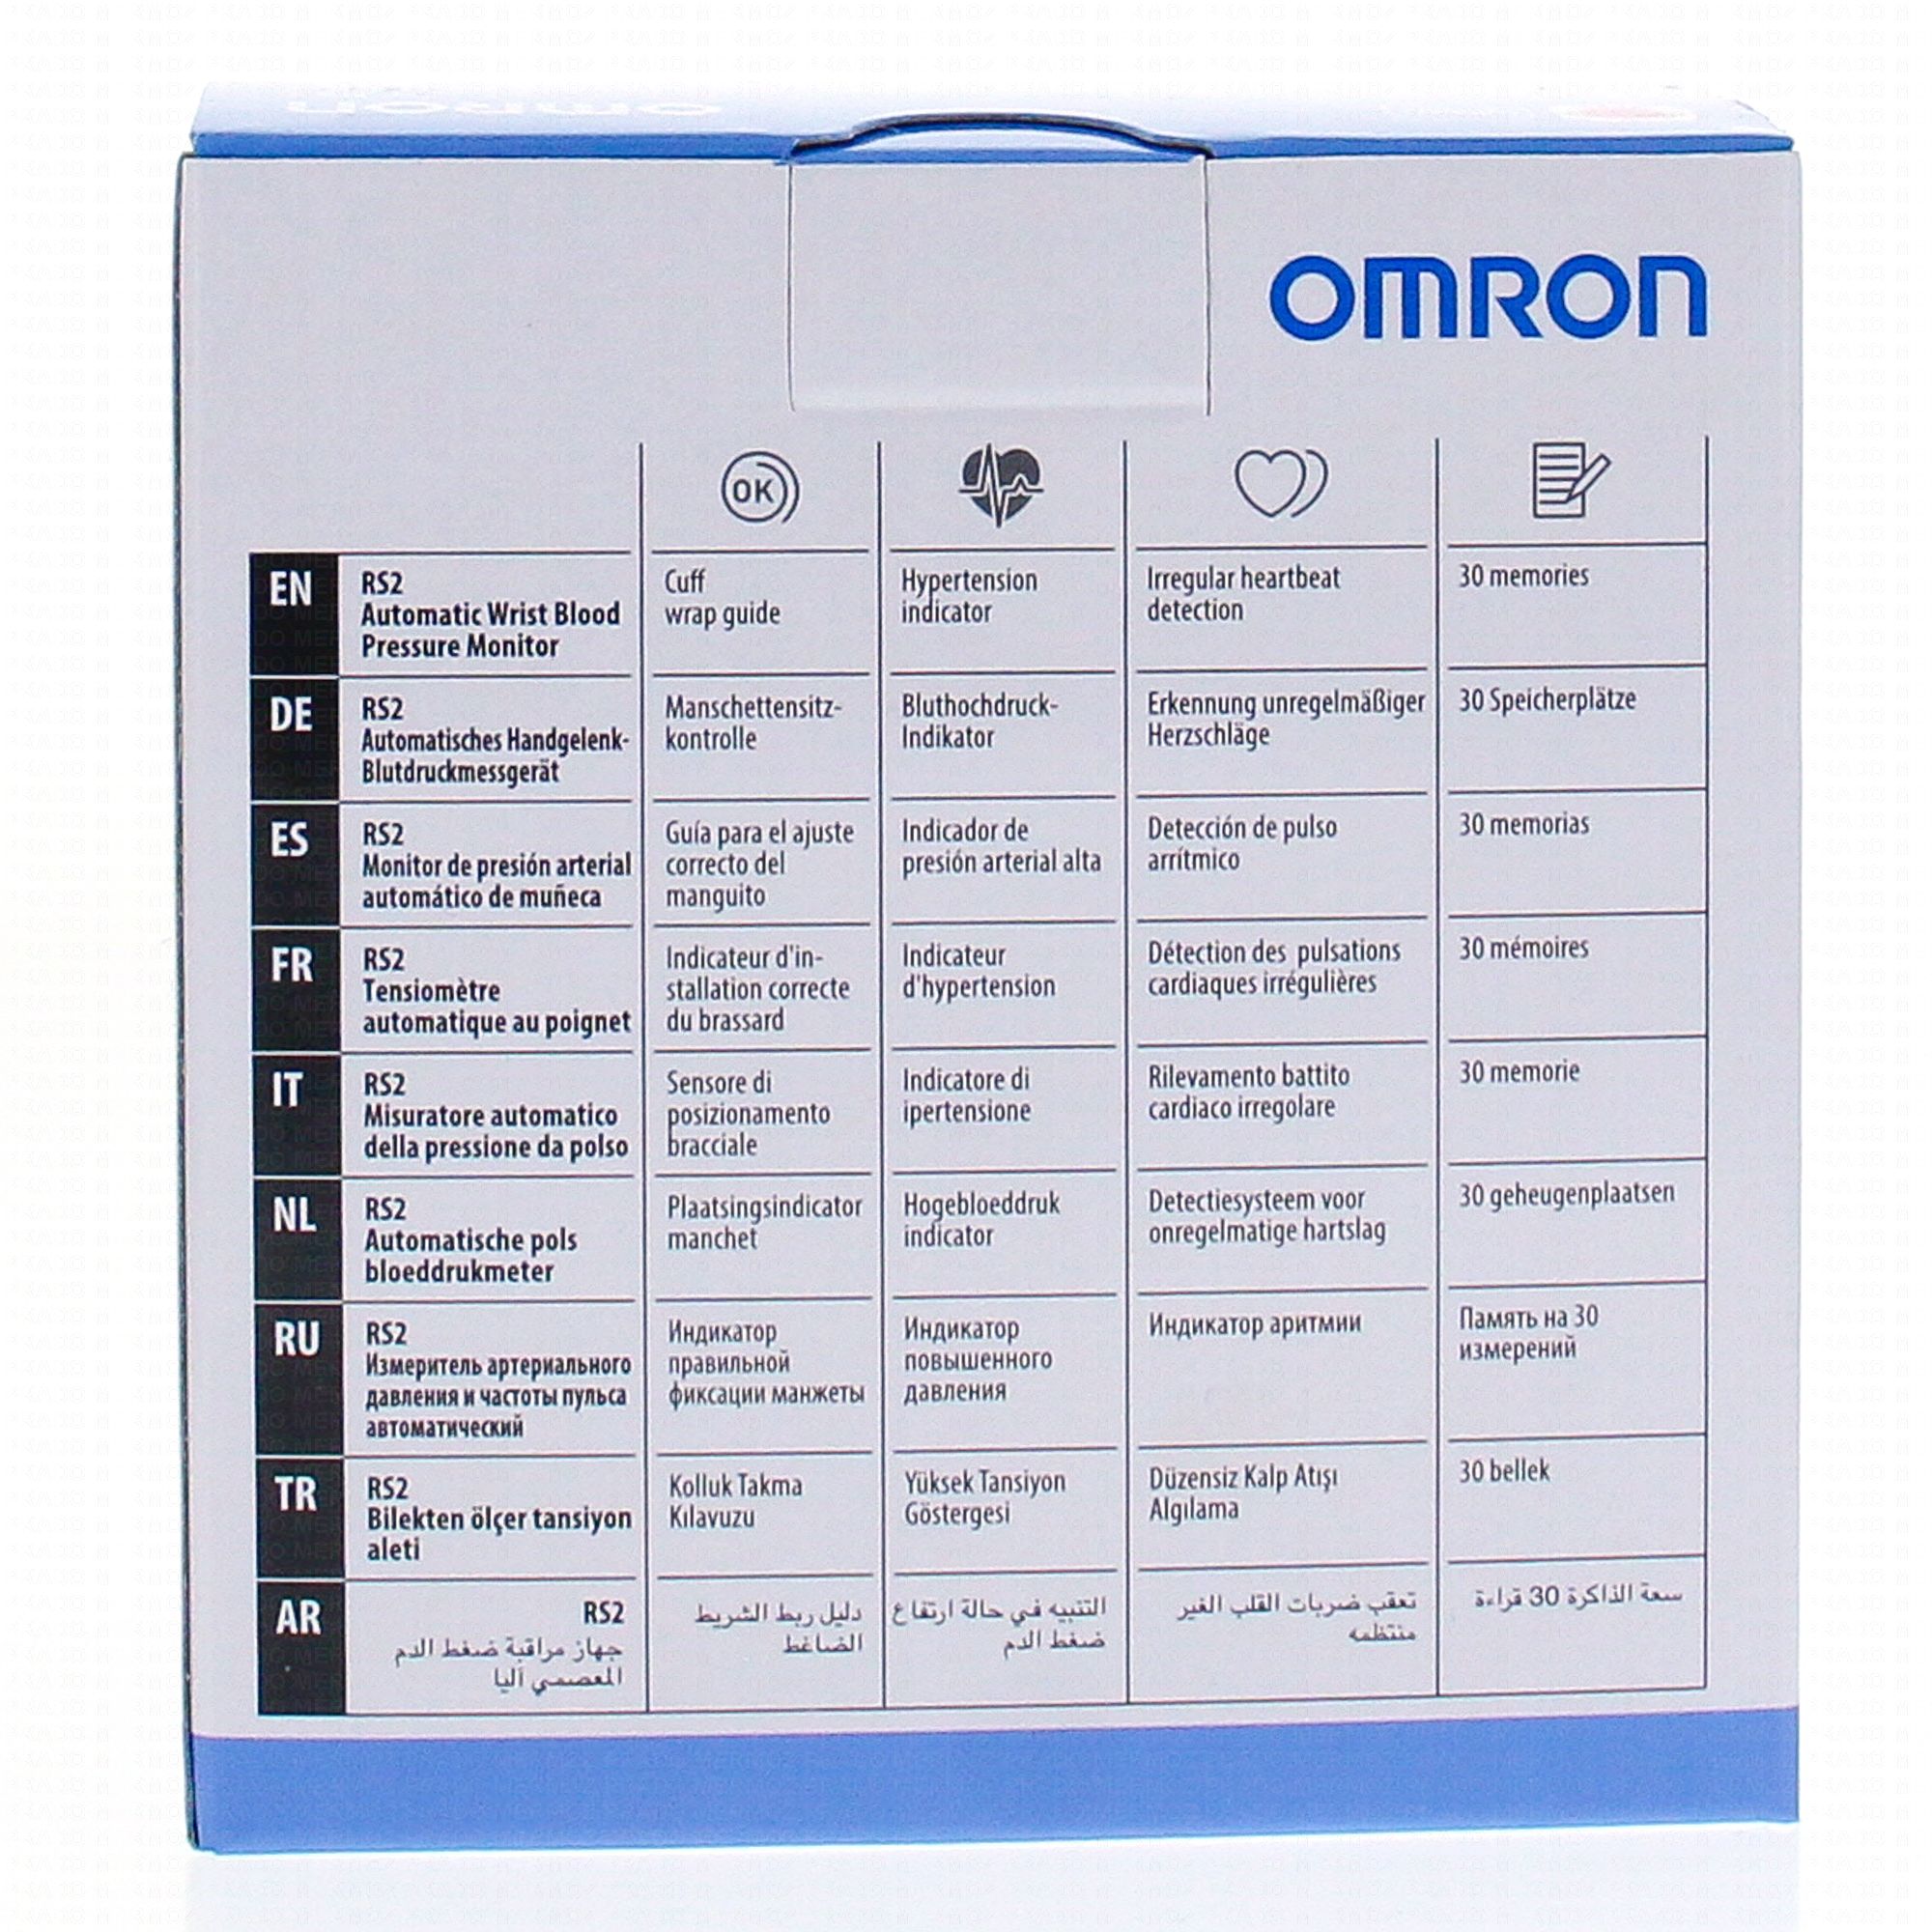 OMRON M2 Intelli IT Tensiomètre automatique brassard - Pharmacie Prado  Mermoz